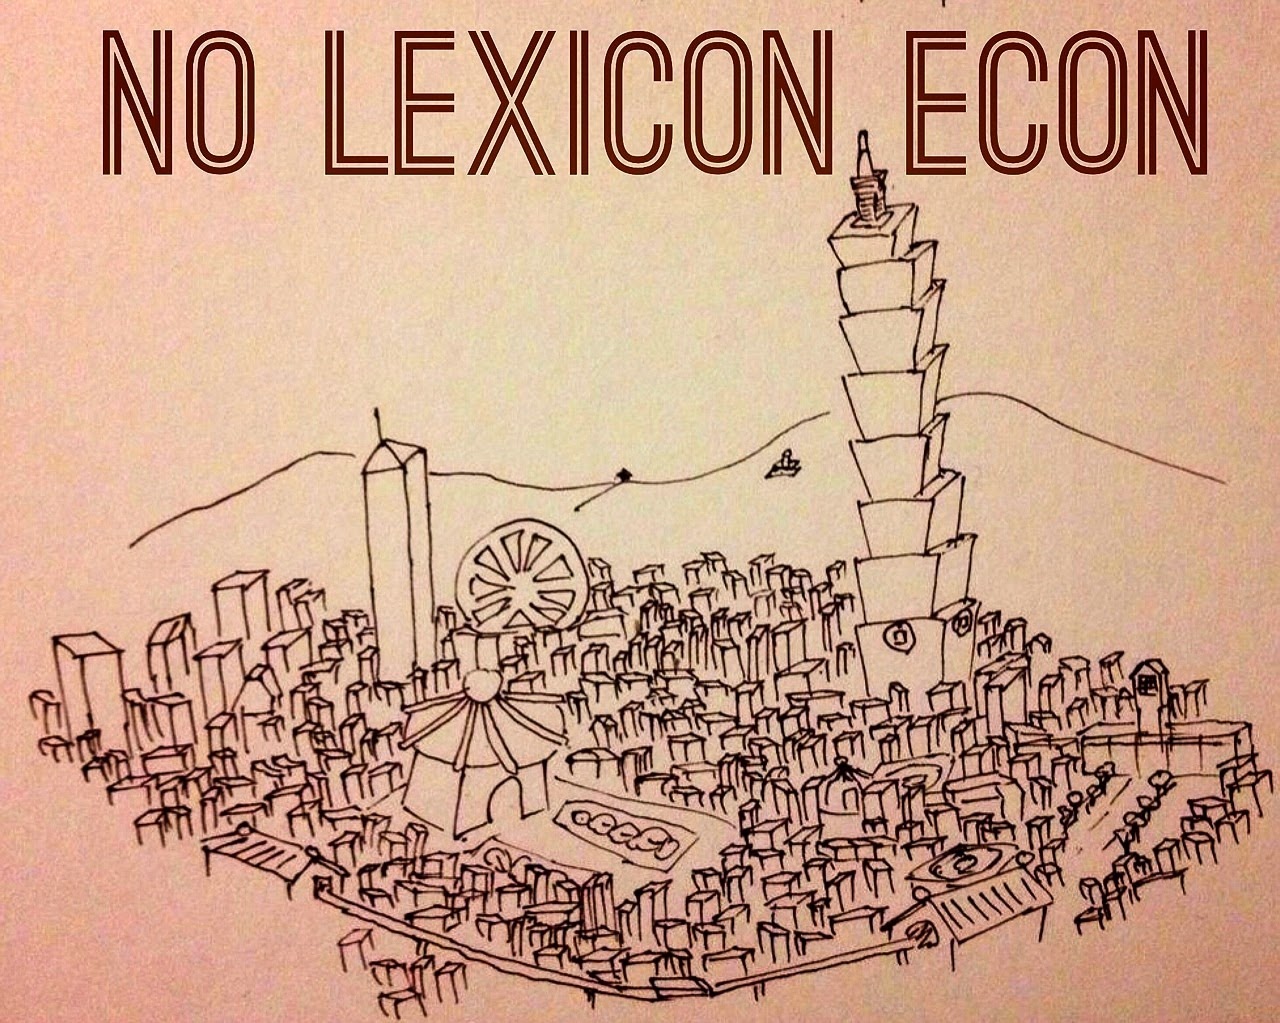 No Lexicon Econ